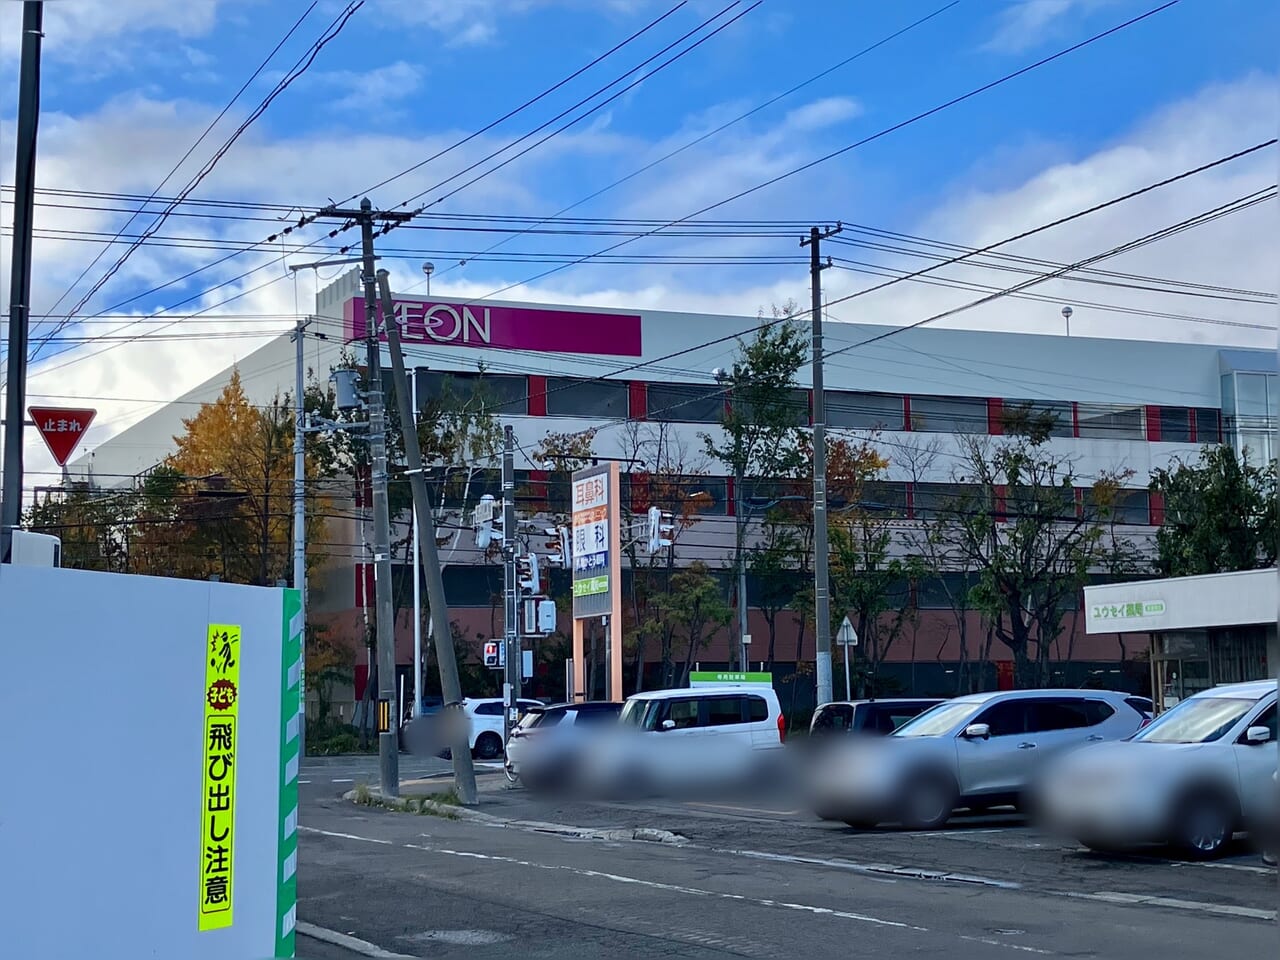 「イオン札幌元町」向かいの建設工事現場。何ができるのかわかりましたよ。